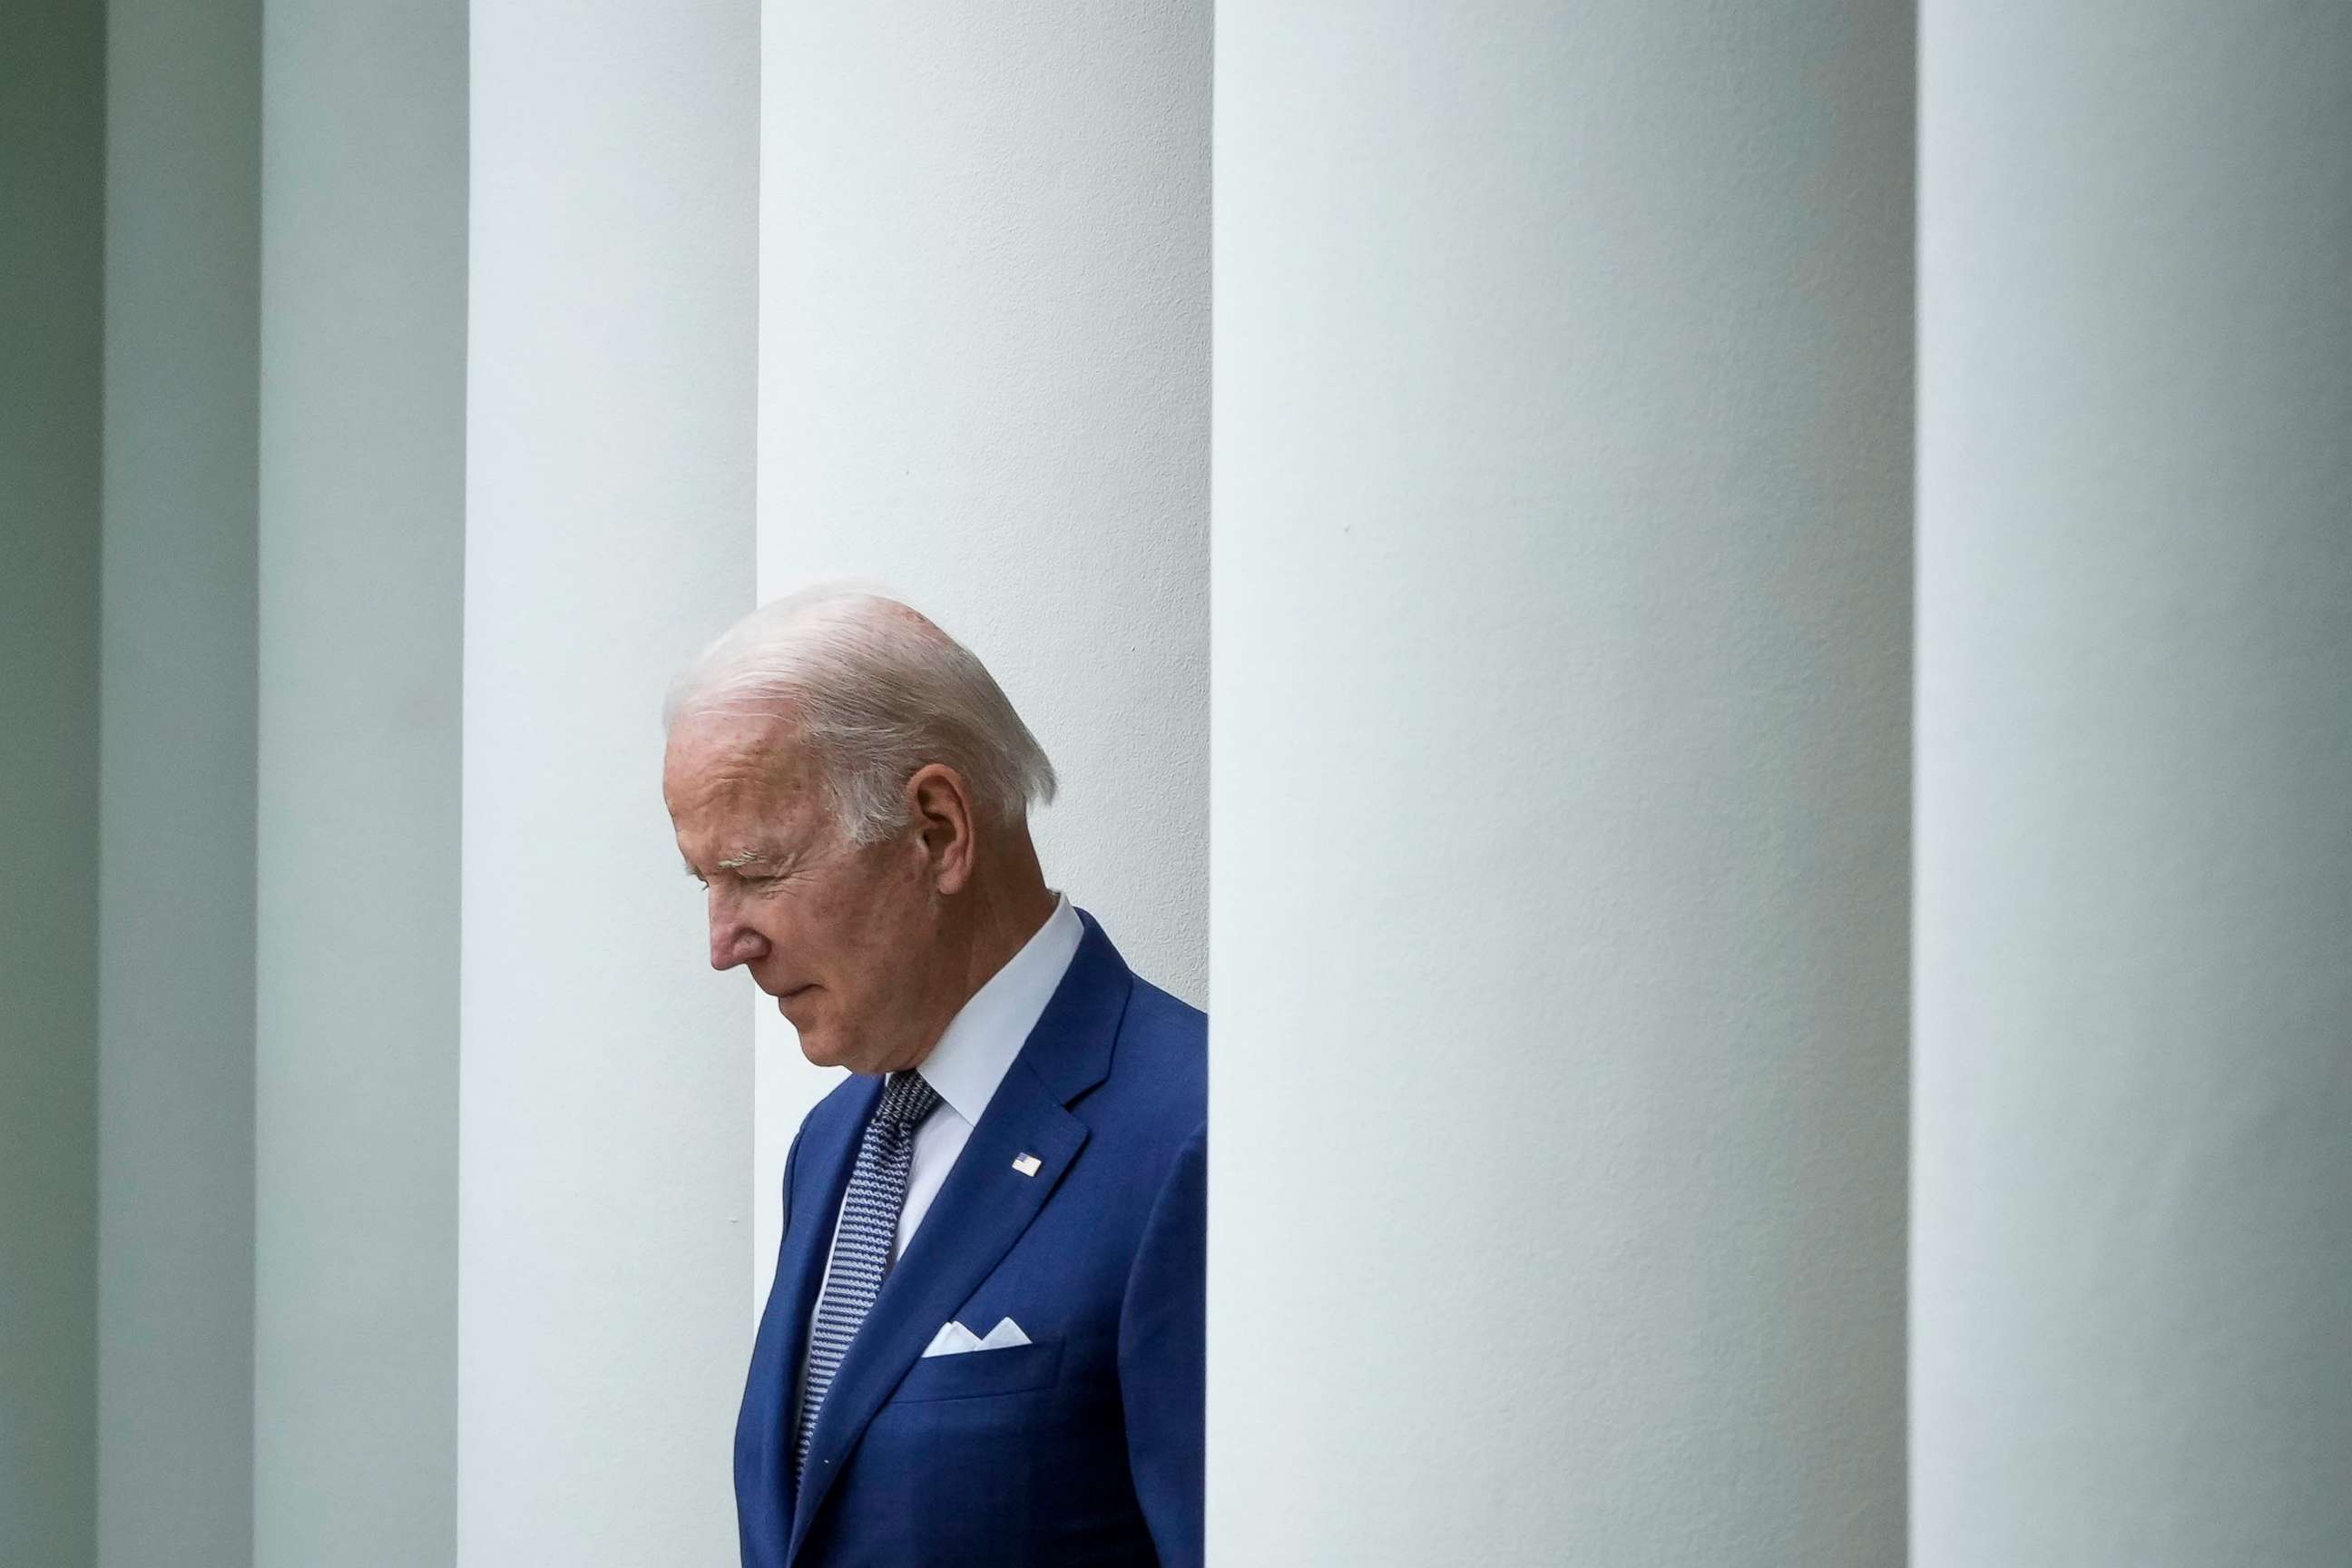 PHOTO: President Joe Biden arrives to speak in the Rose Garden of the White House, May 13, 2022.